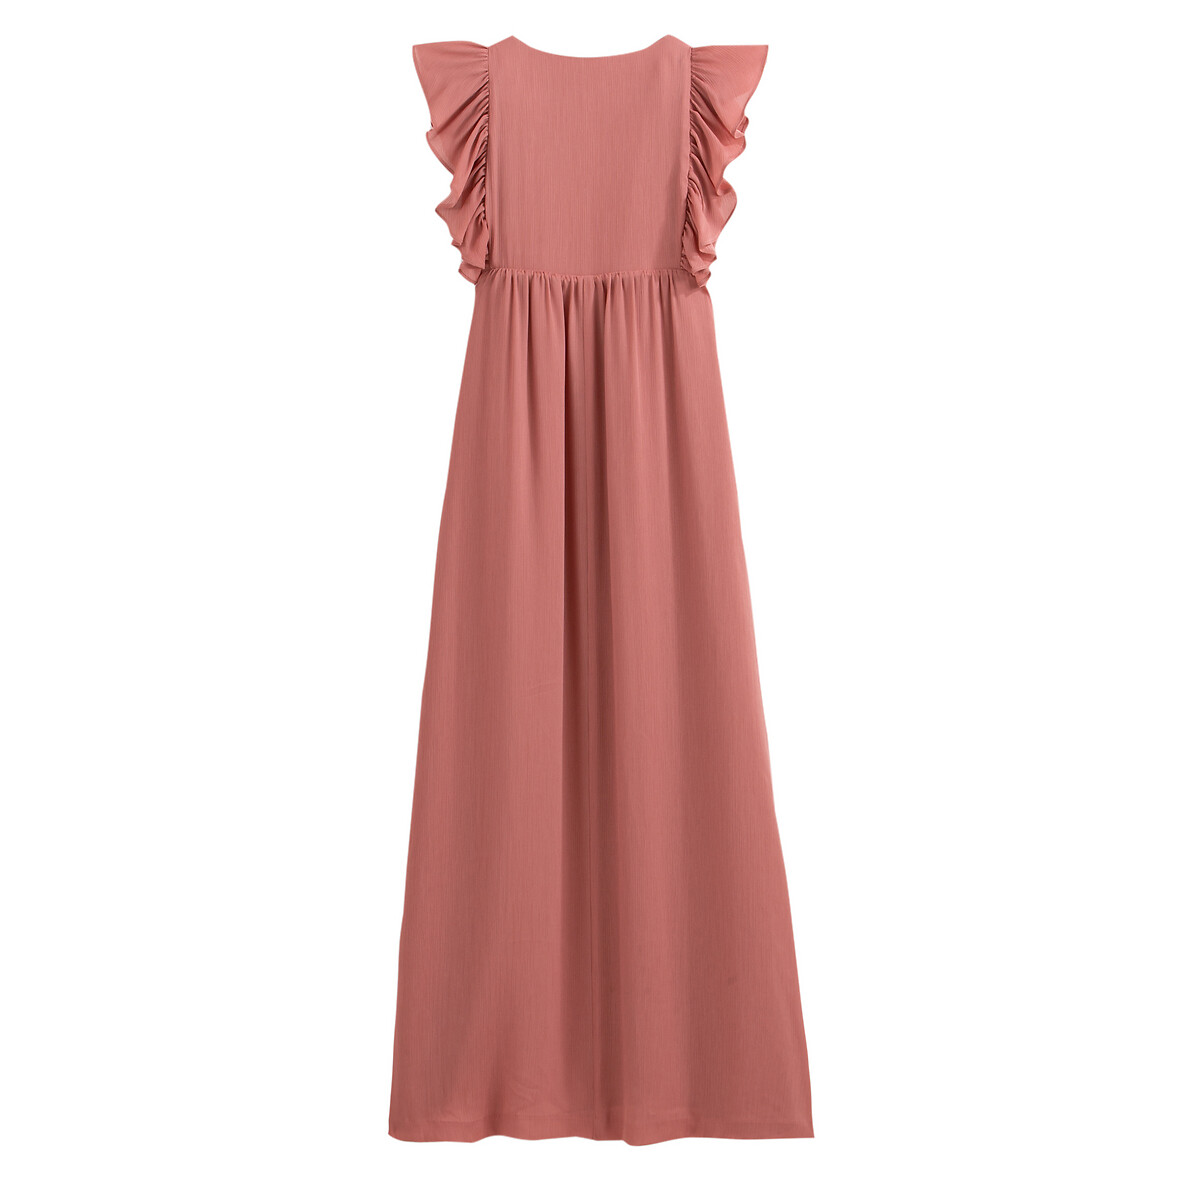 Платье La Redoute Длинное без рукавов 36 (FR) - 42 (RUS) розовый, размер 36 (FR) - 42 (RUS) Длинное без рукавов 36 (FR) - 42 (RUS) розовый - фото 3